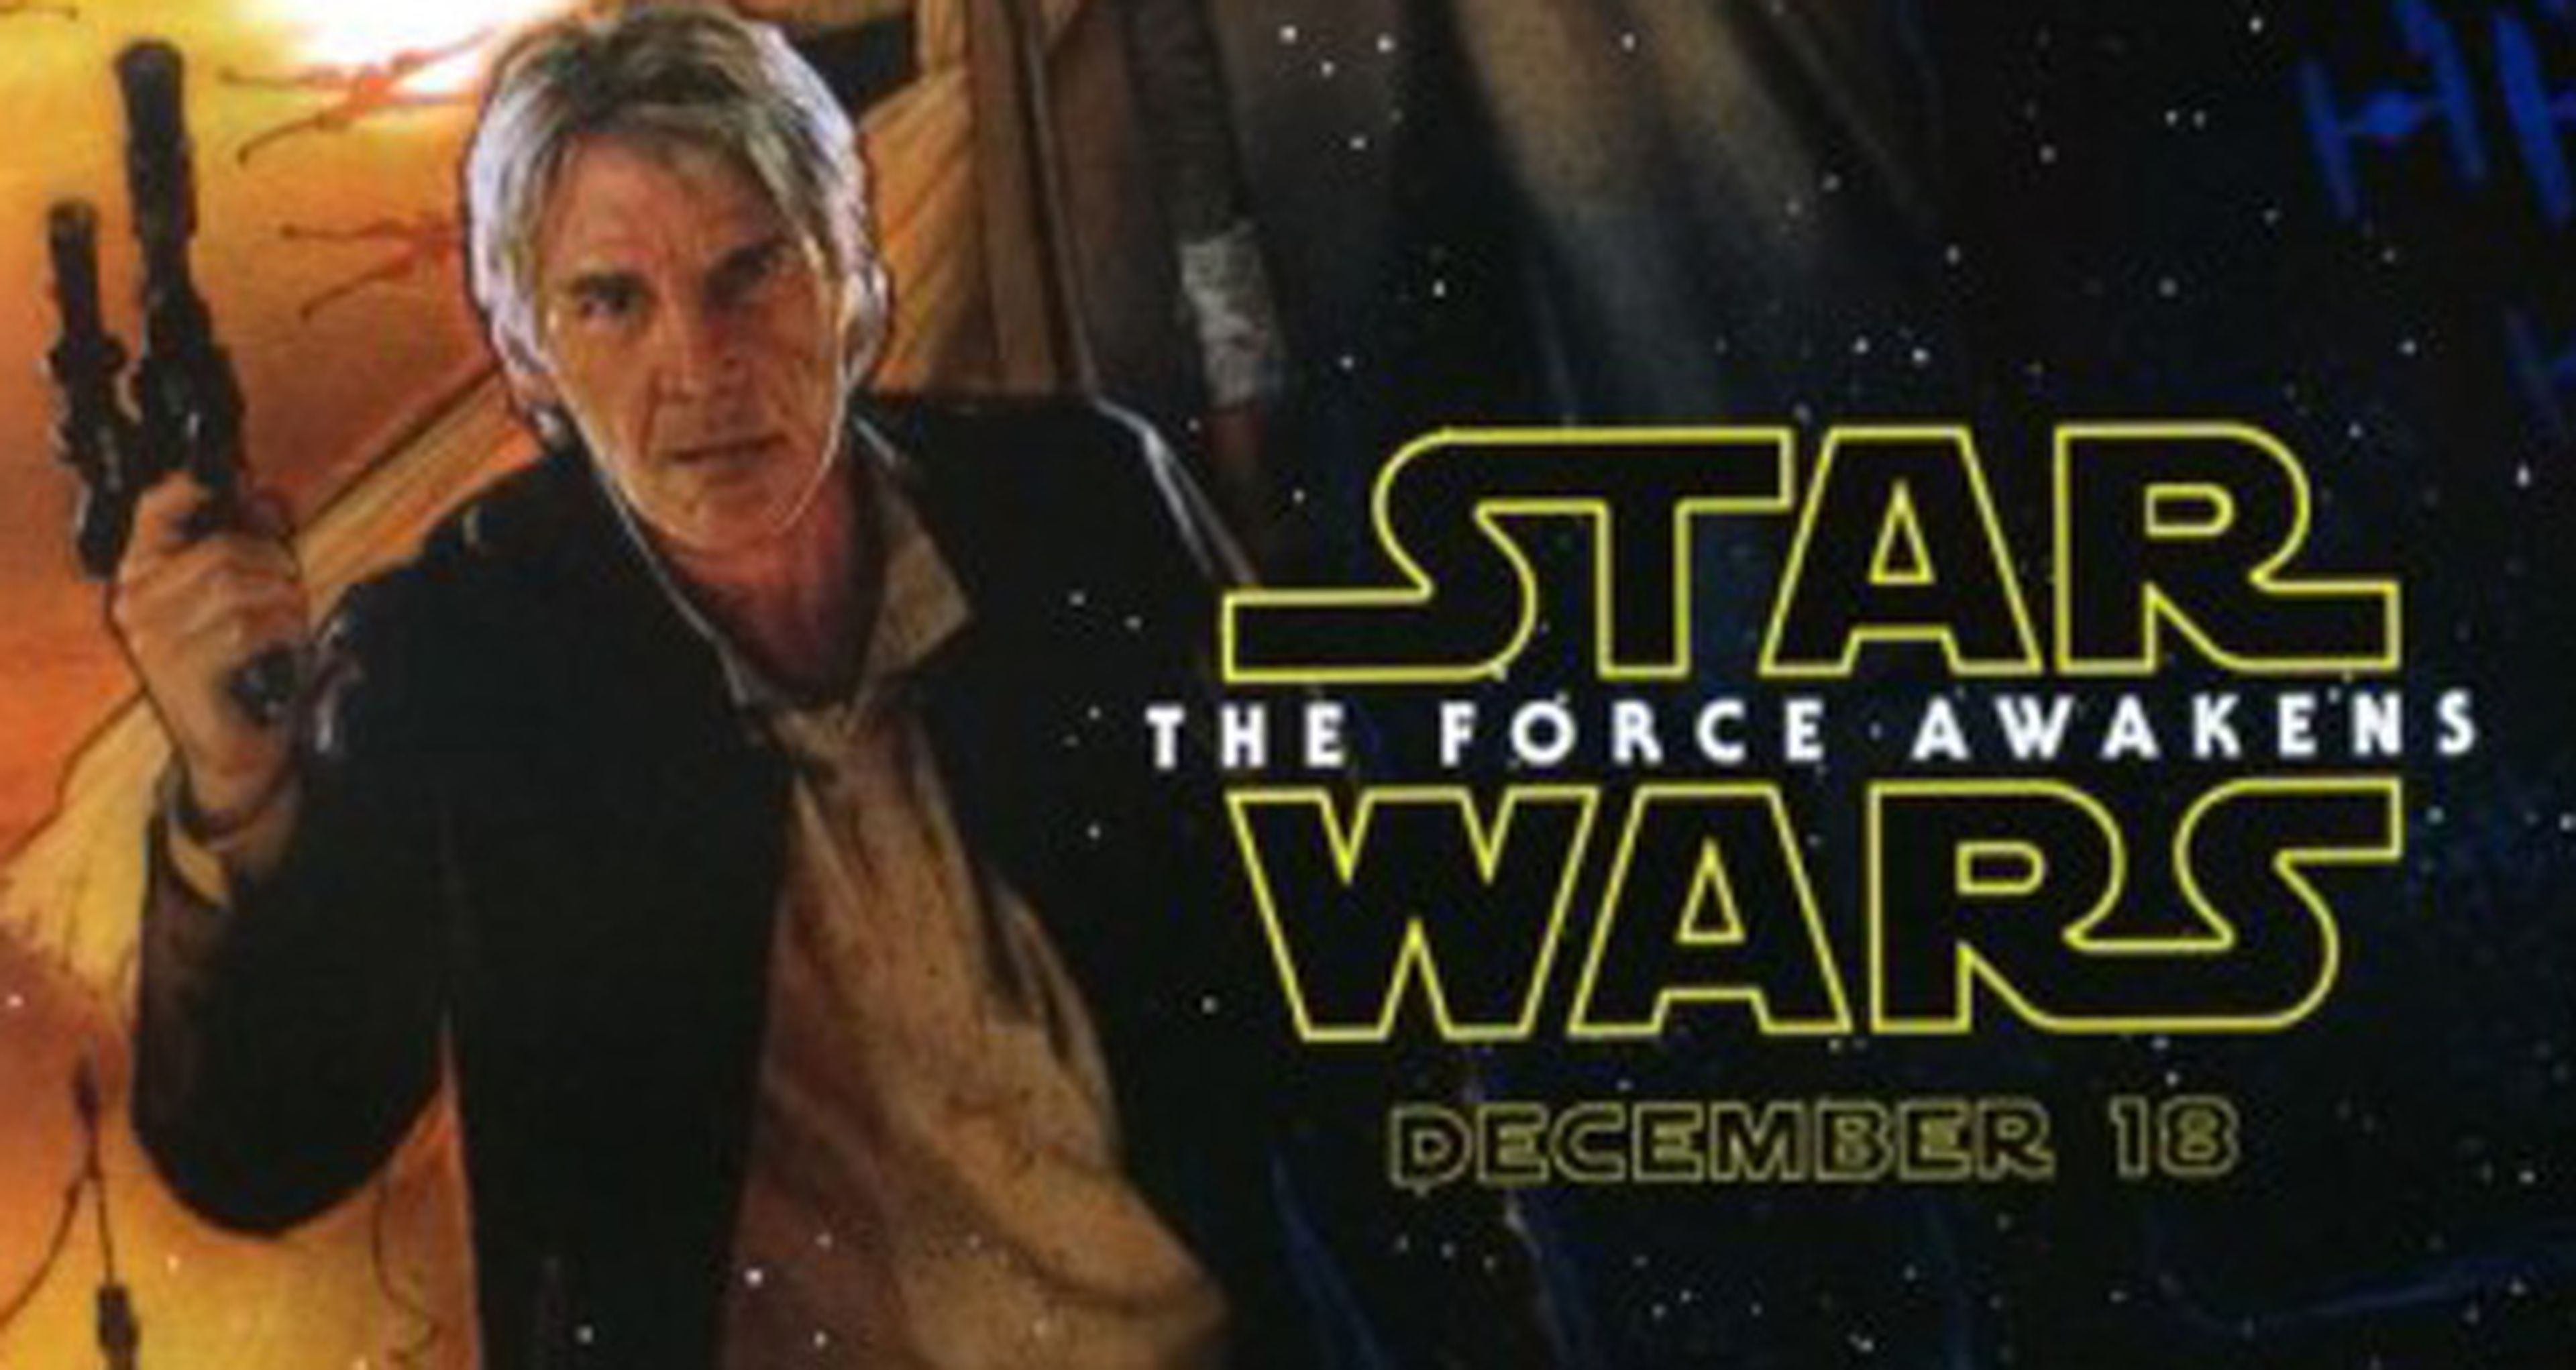 Star Wars Episodio VII: El despertar de la Fuerza - Poster oficial